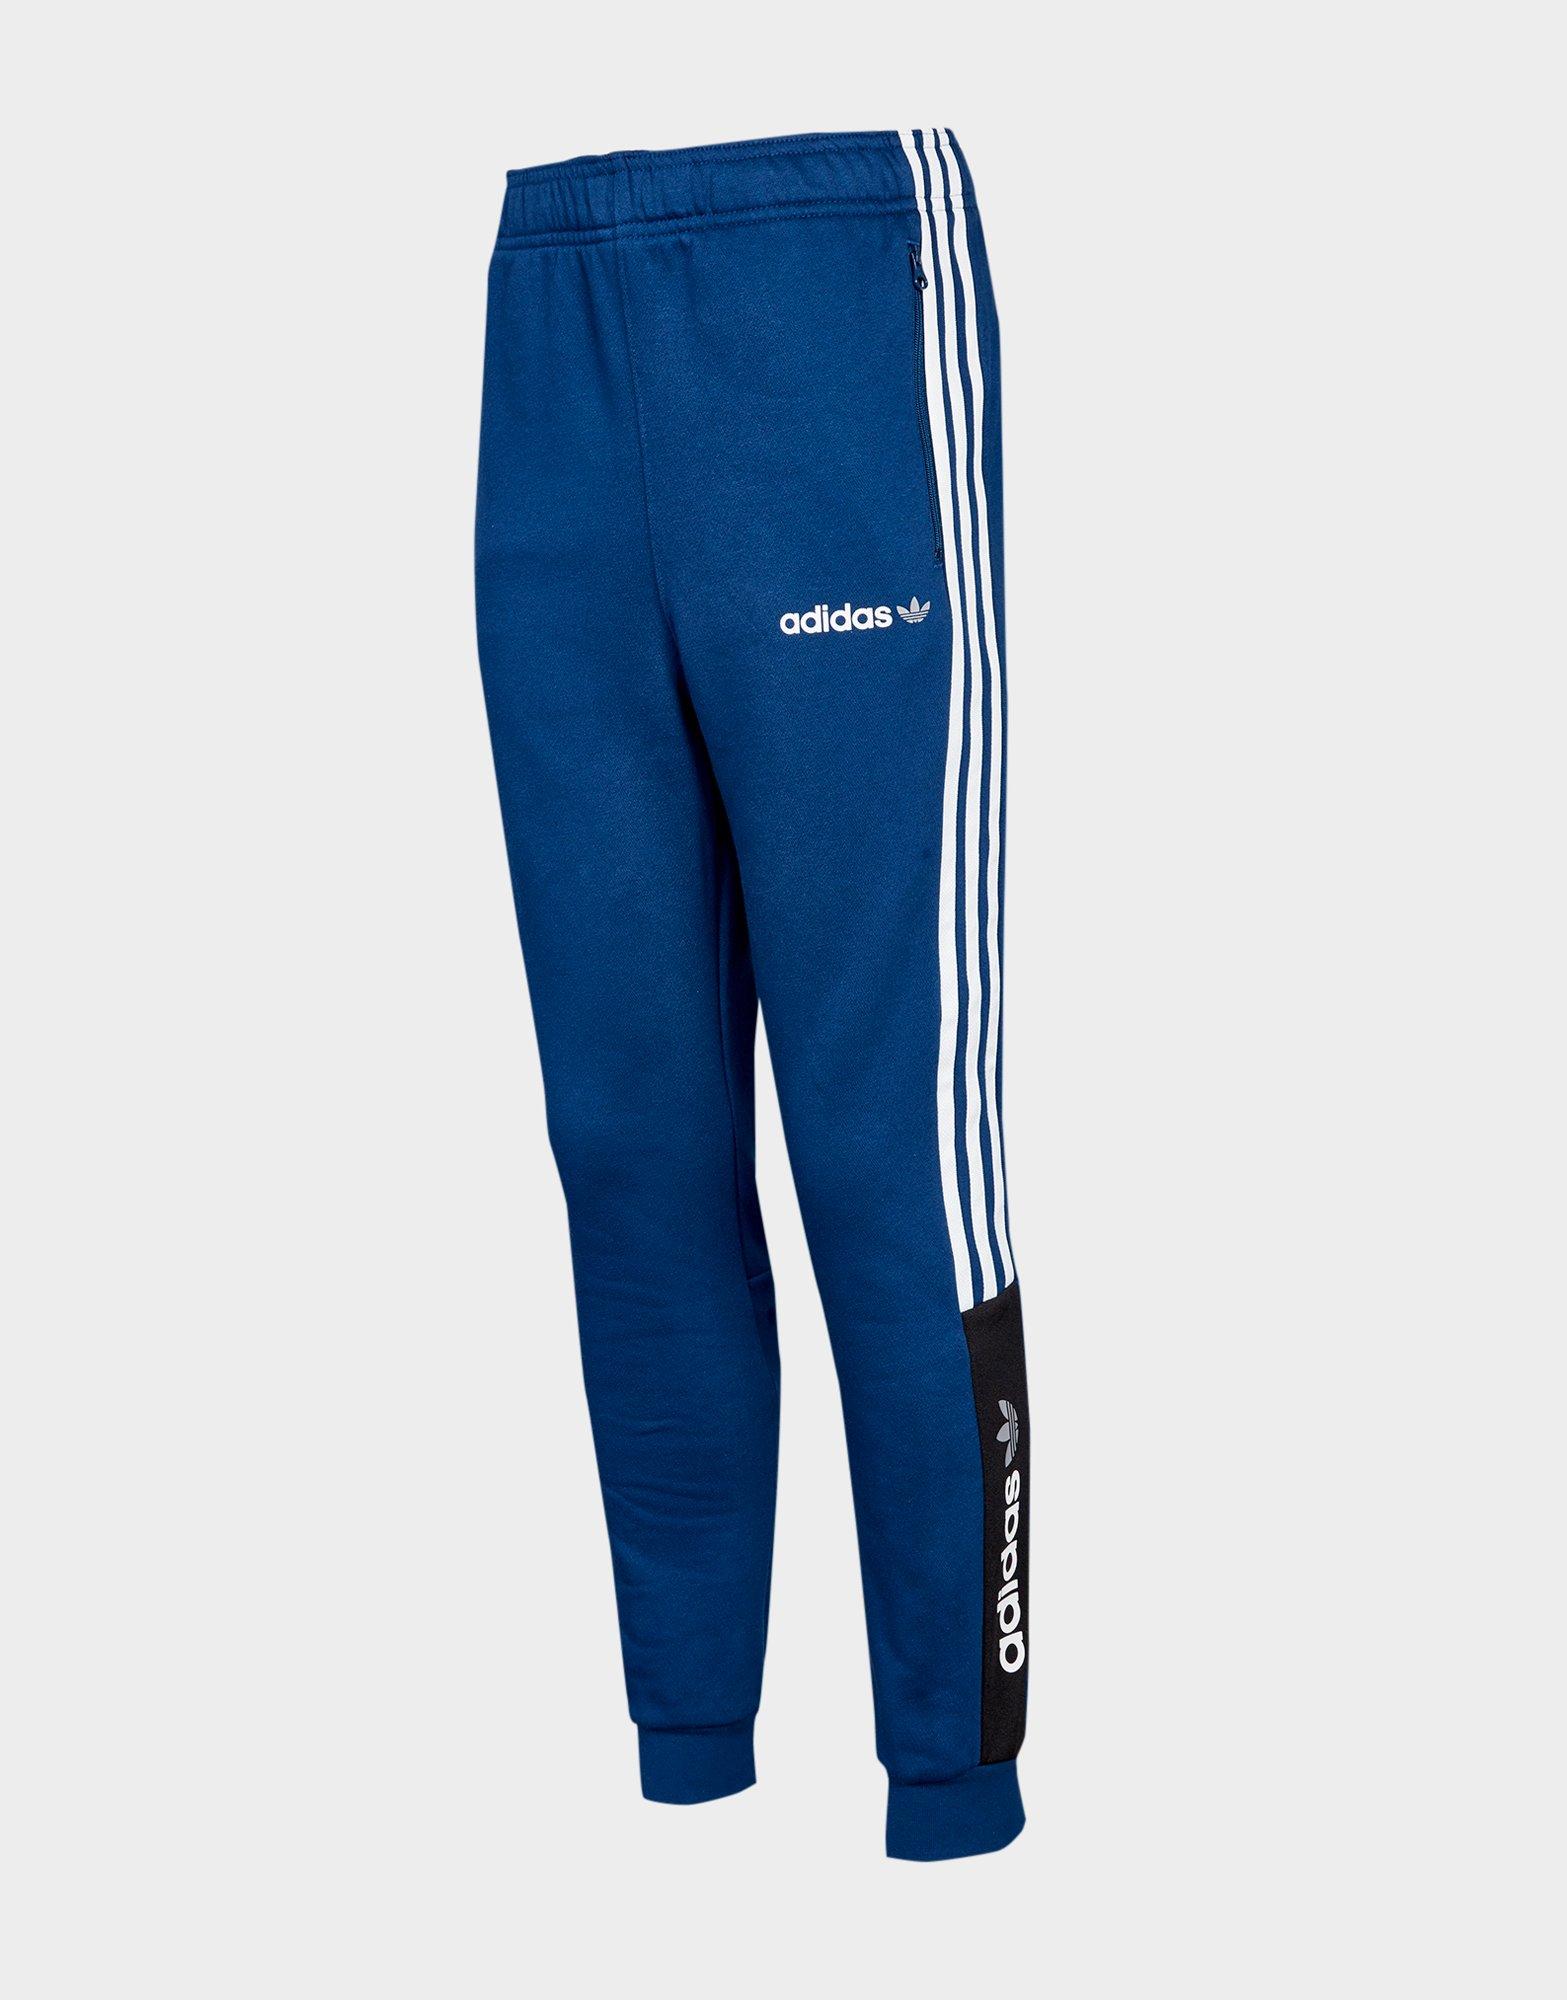 Compra adidas Originals pantalón de chándal Challenger júnior en Azul